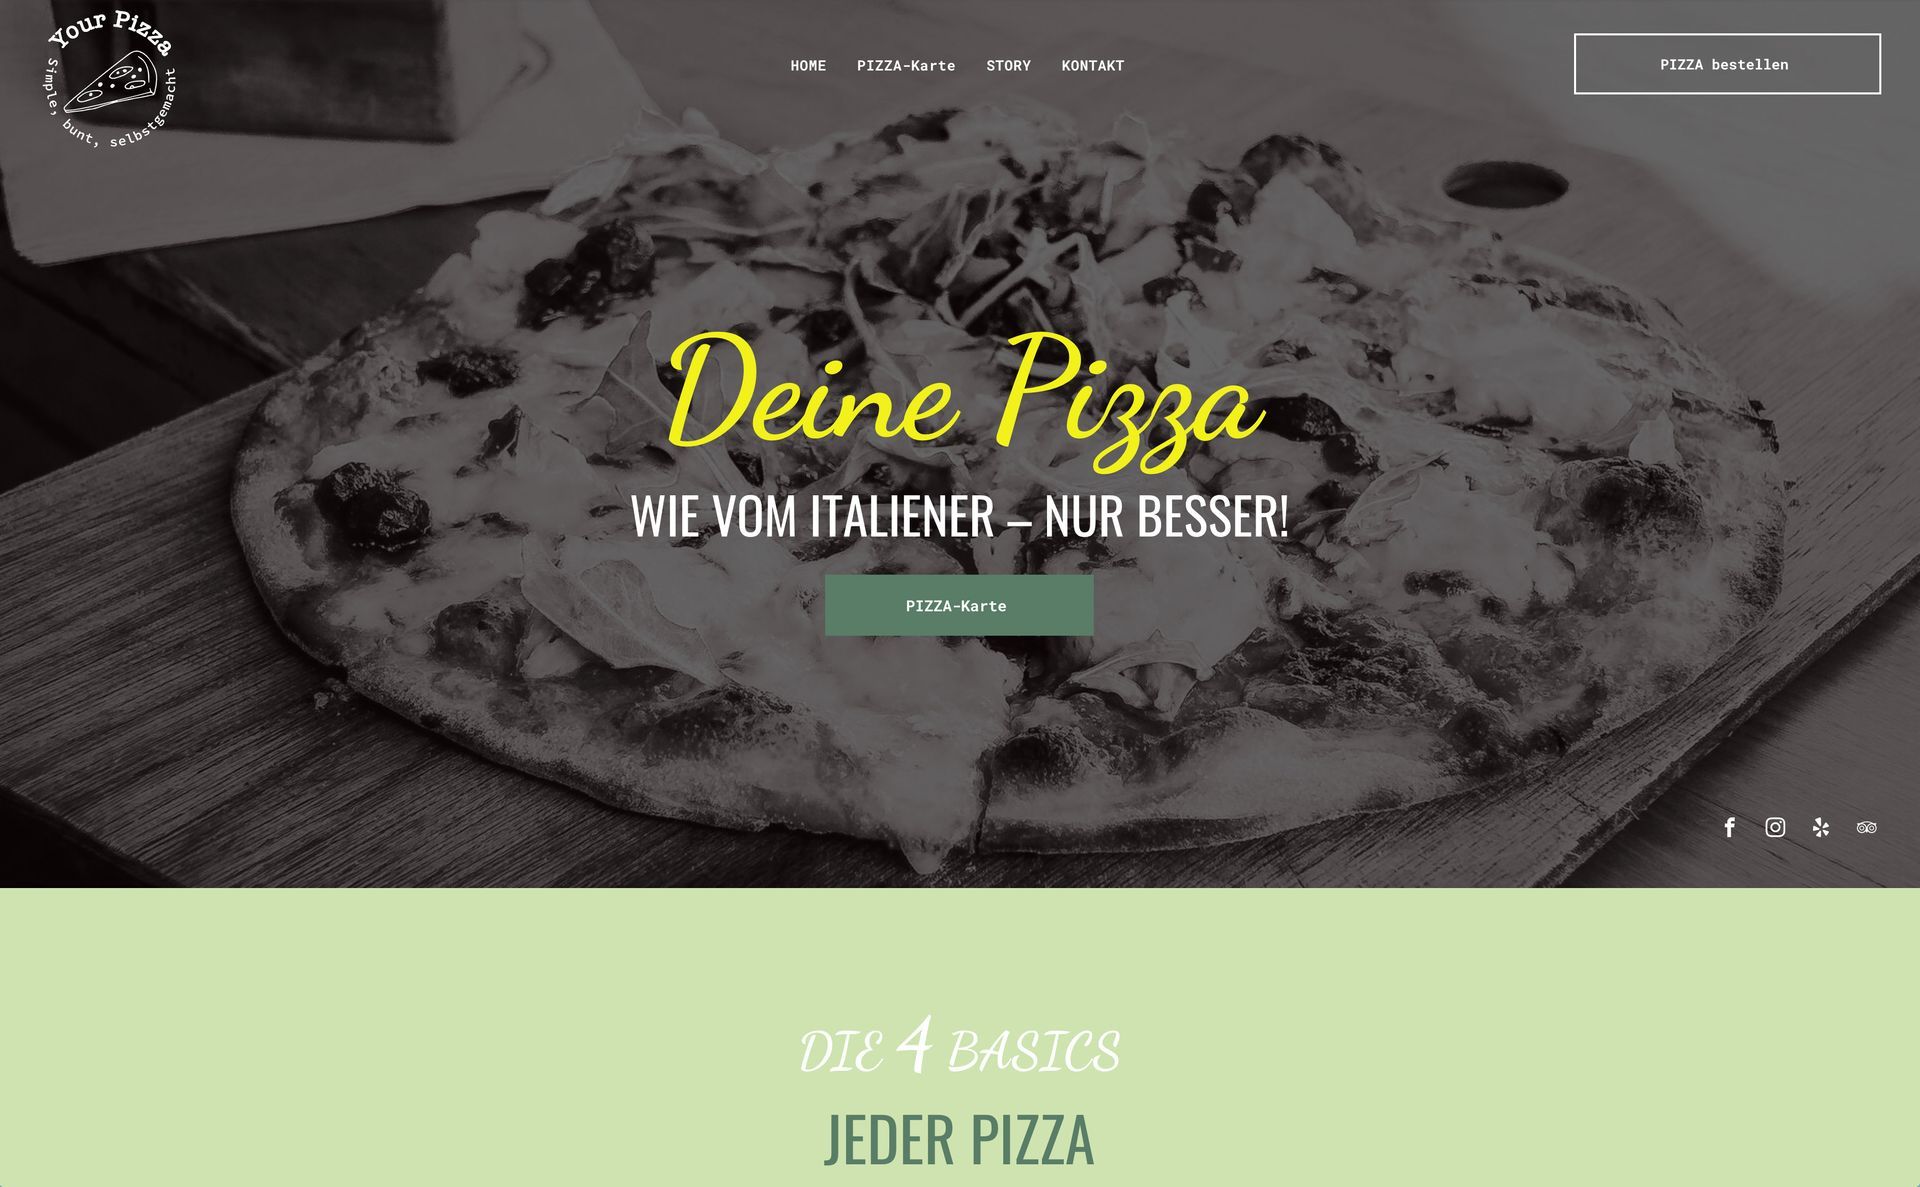 Eine Pizza liegt auf einem Holztisch. Homepage einer Website.